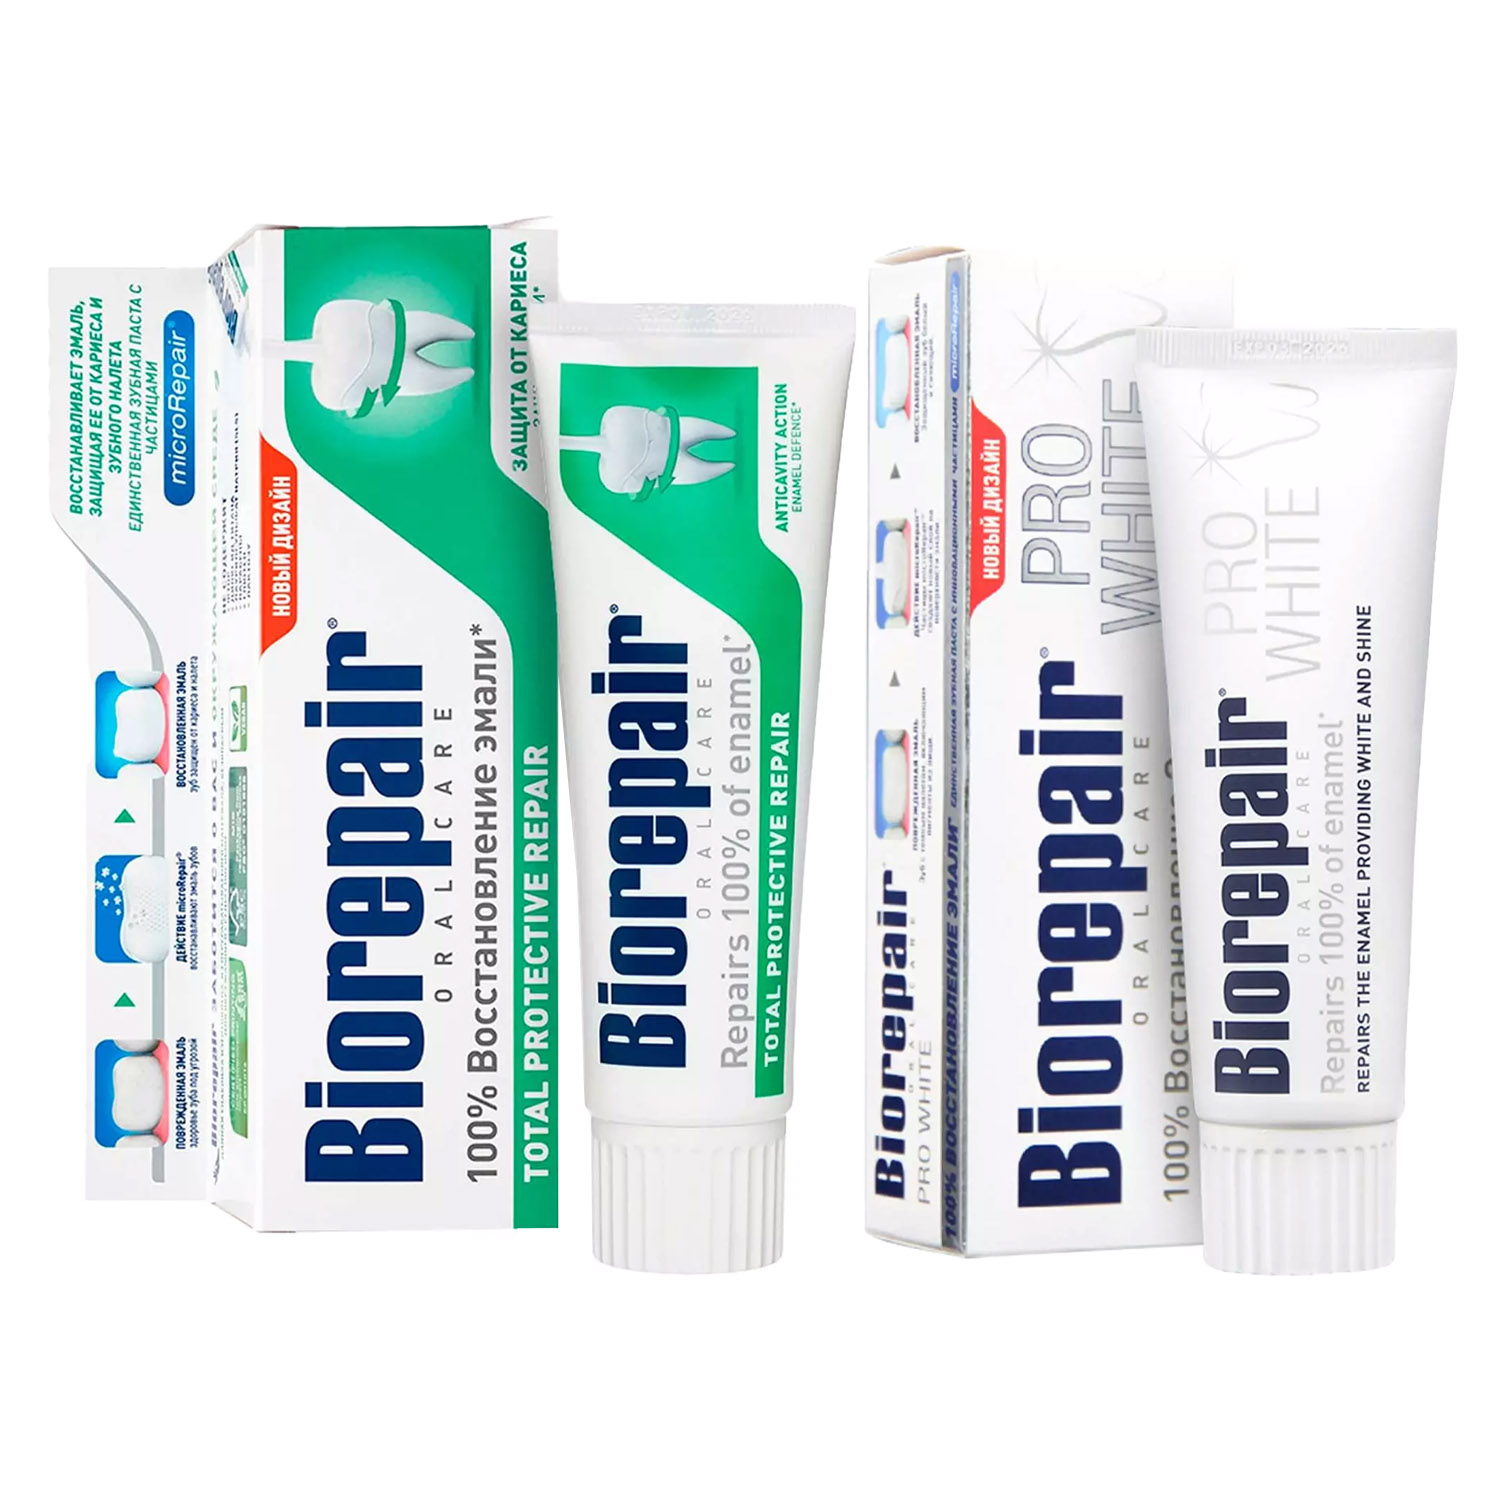 Biorepair Набор зубных паст для комплексной защиты, 2х75 мл (Biorepair, Ежедневная забота) biorepair набор зубных паст для защиты эмали 2х75 мл biorepair отбеливание и лечение